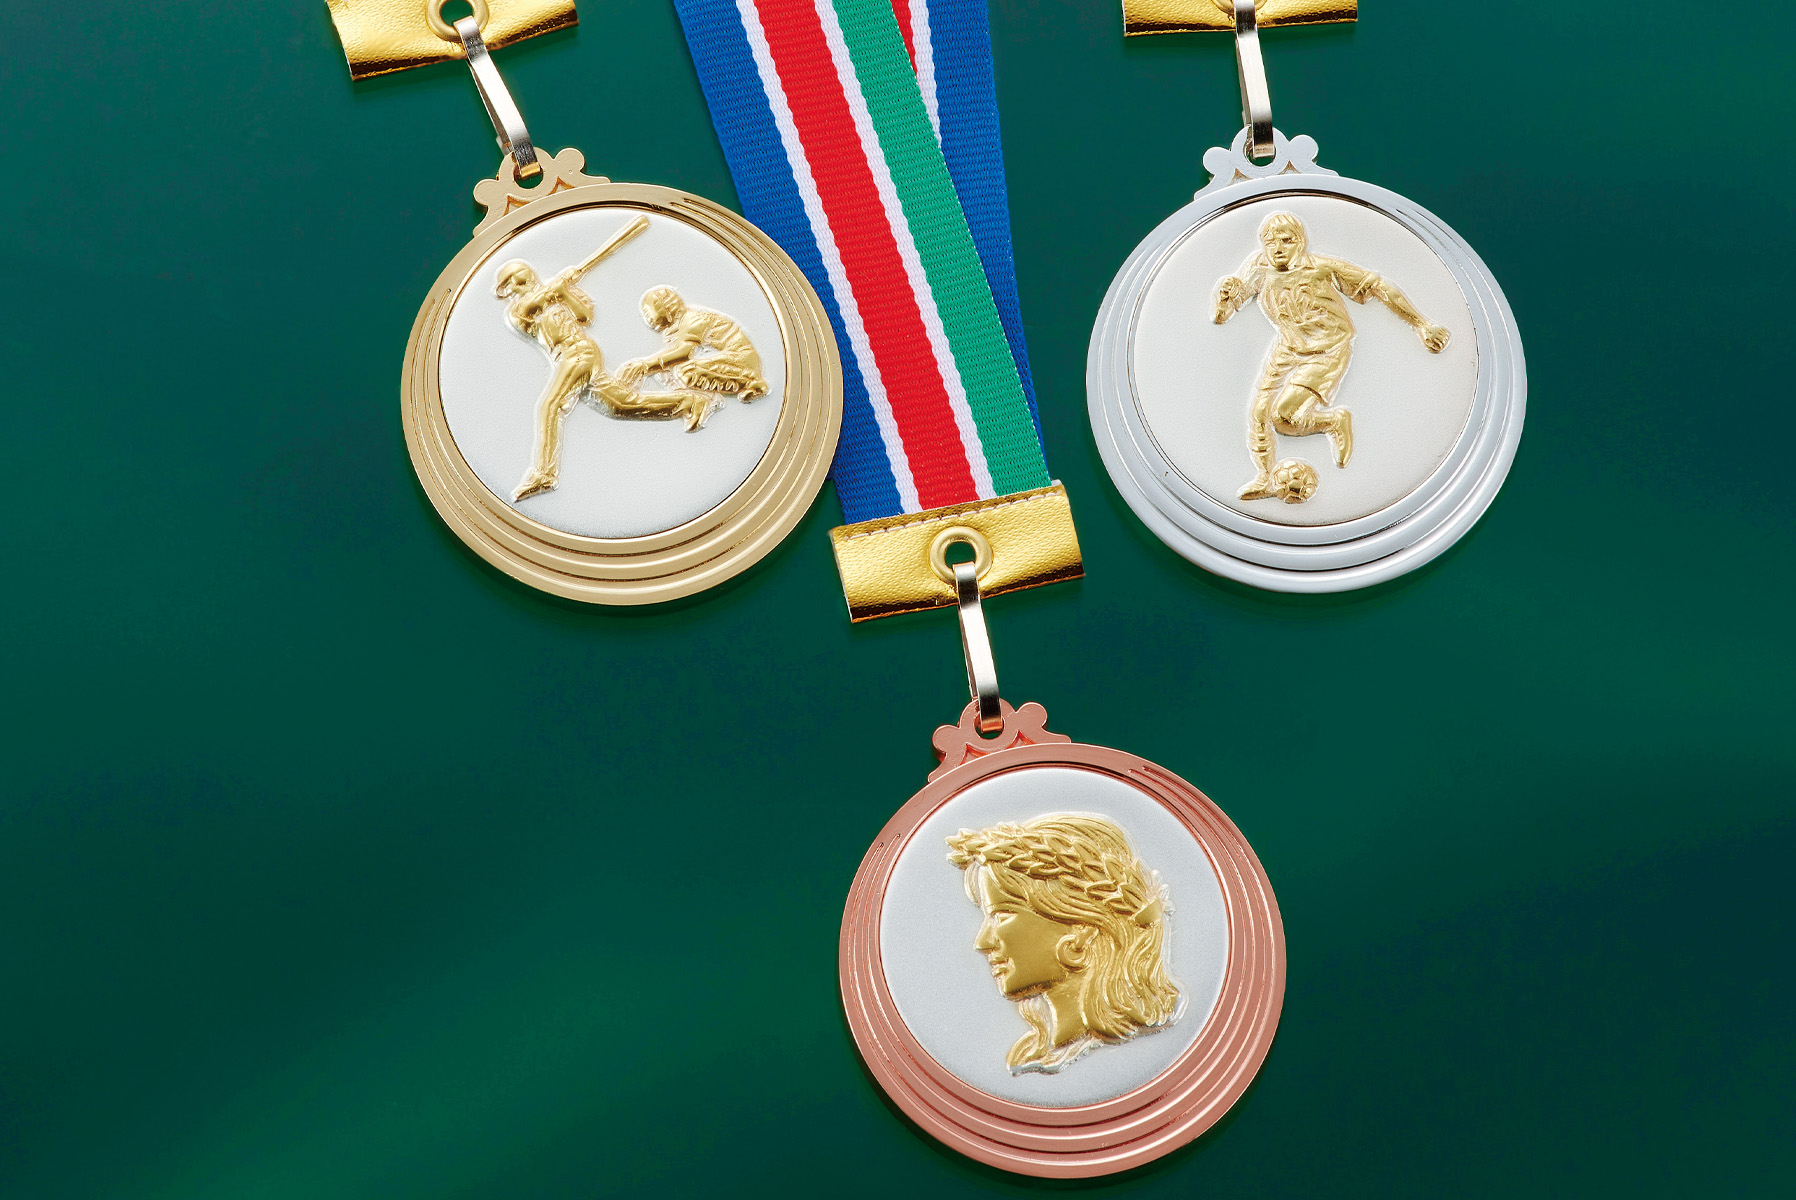 JAS-RLM-CP-53 金メダル・銀メダル・銅メダルから選べ、センターシンボルを変更するミドルサイズメダル